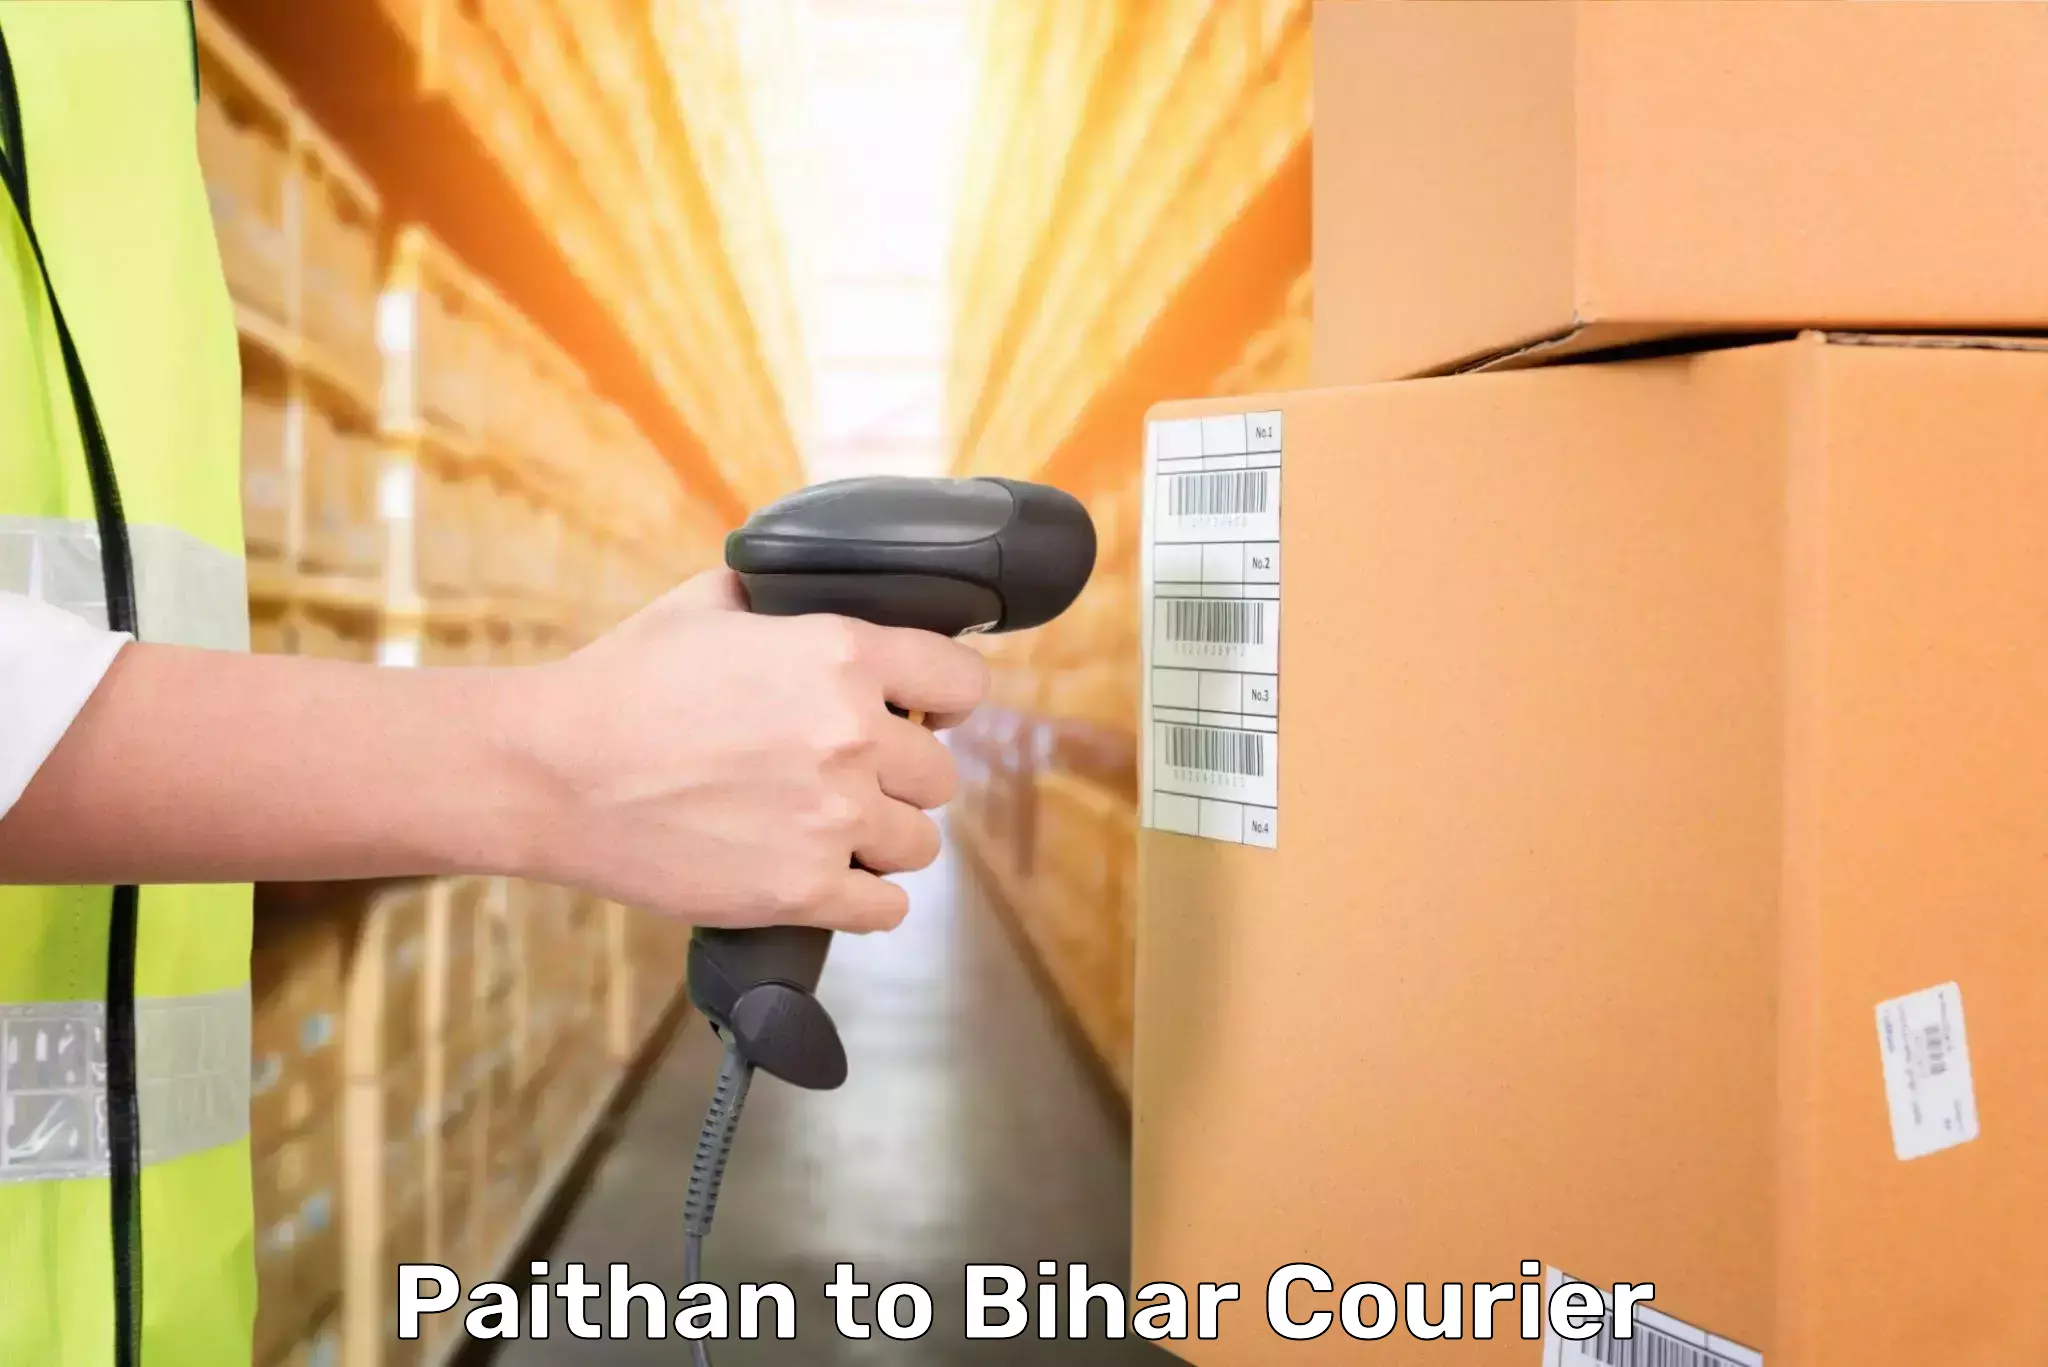 Luggage shipment specialists Paithan to Lalganj Vaishali